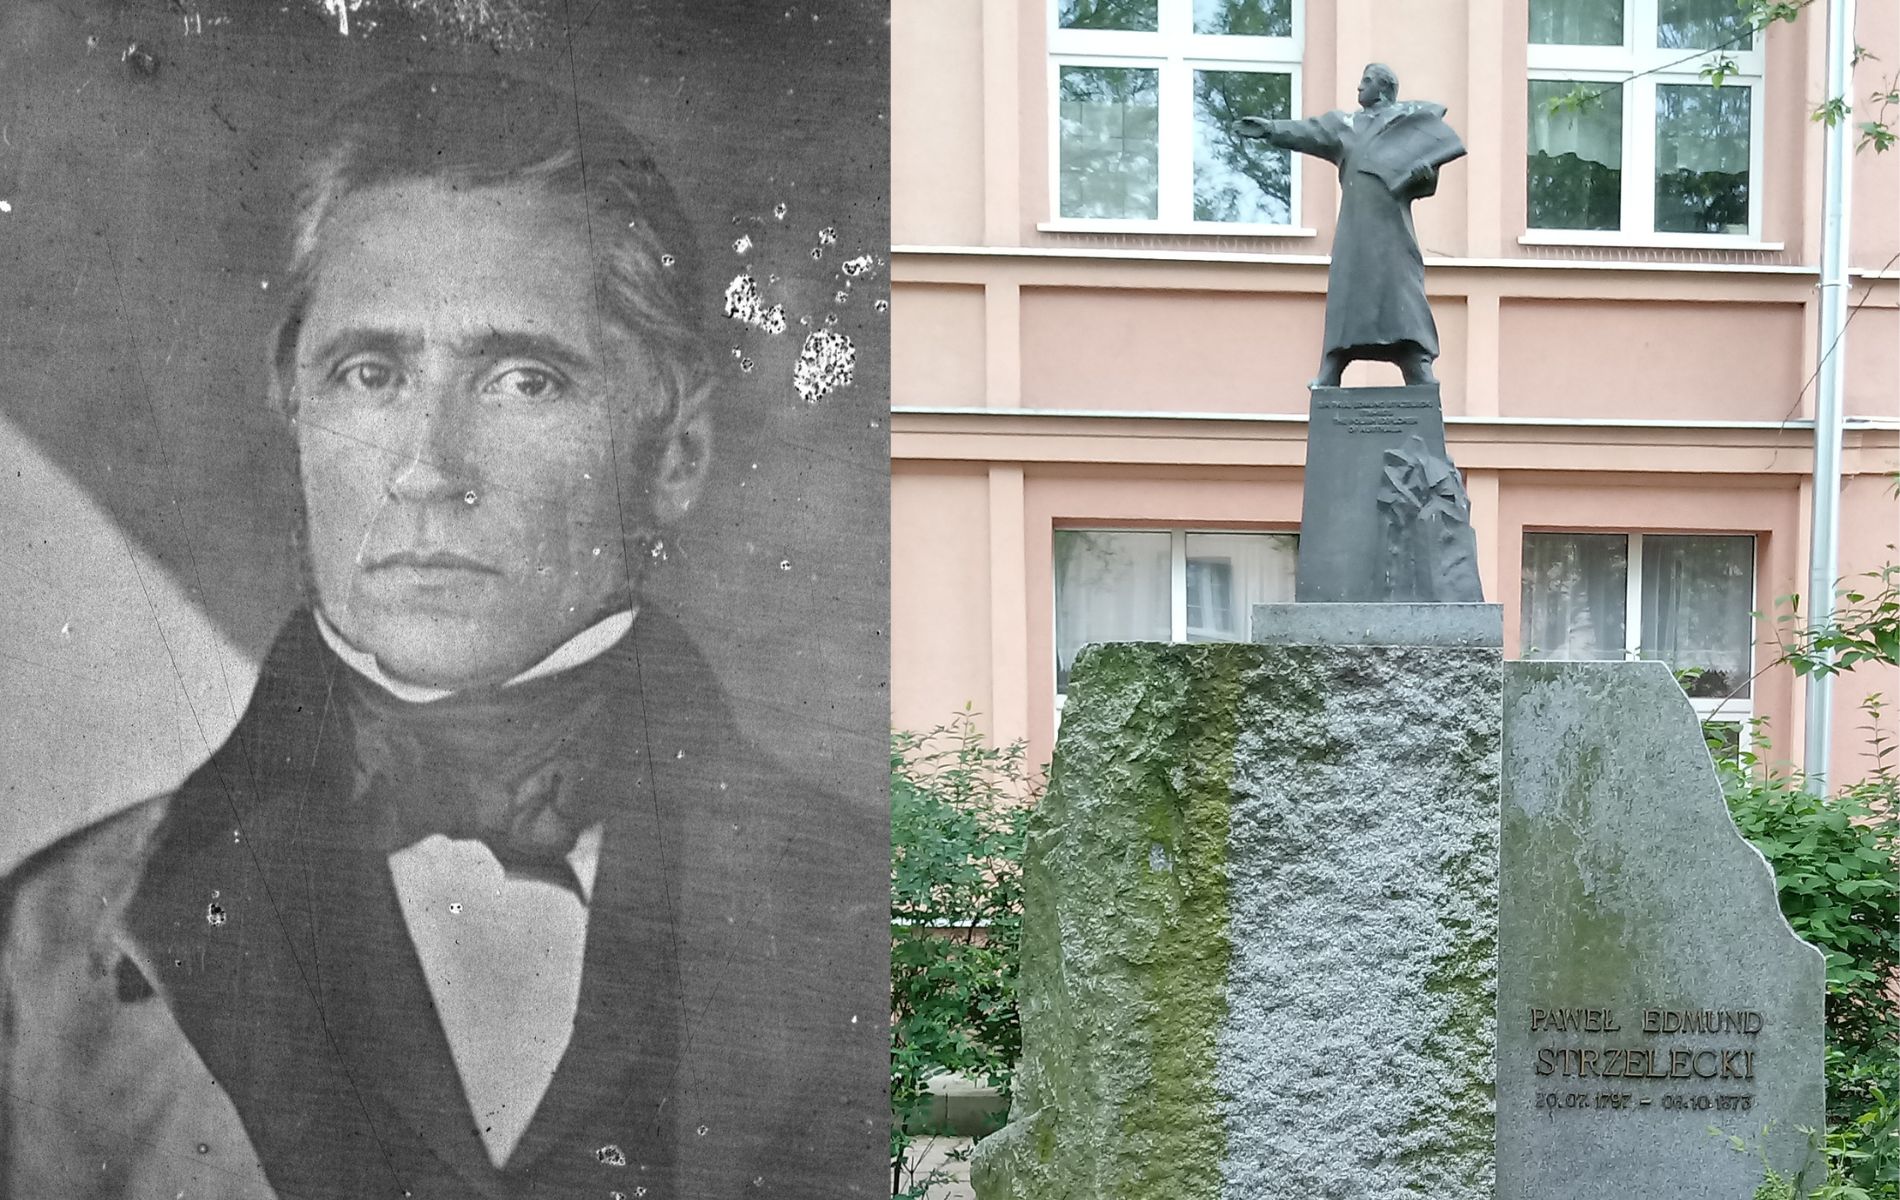 Po lewej stronie czarno-białe zdjęcie portretowe Pawła Edmunda Strzeleckiego. Po prawej zdjęcie pomnika Pawła Edmunda Strzeleckiego - na dużym głazie kamienna wyprostowana postać mężczyzny w długim płaszczu, z prawą ręką wyprostowaną skierowaną przed siebie - grafika artykułu